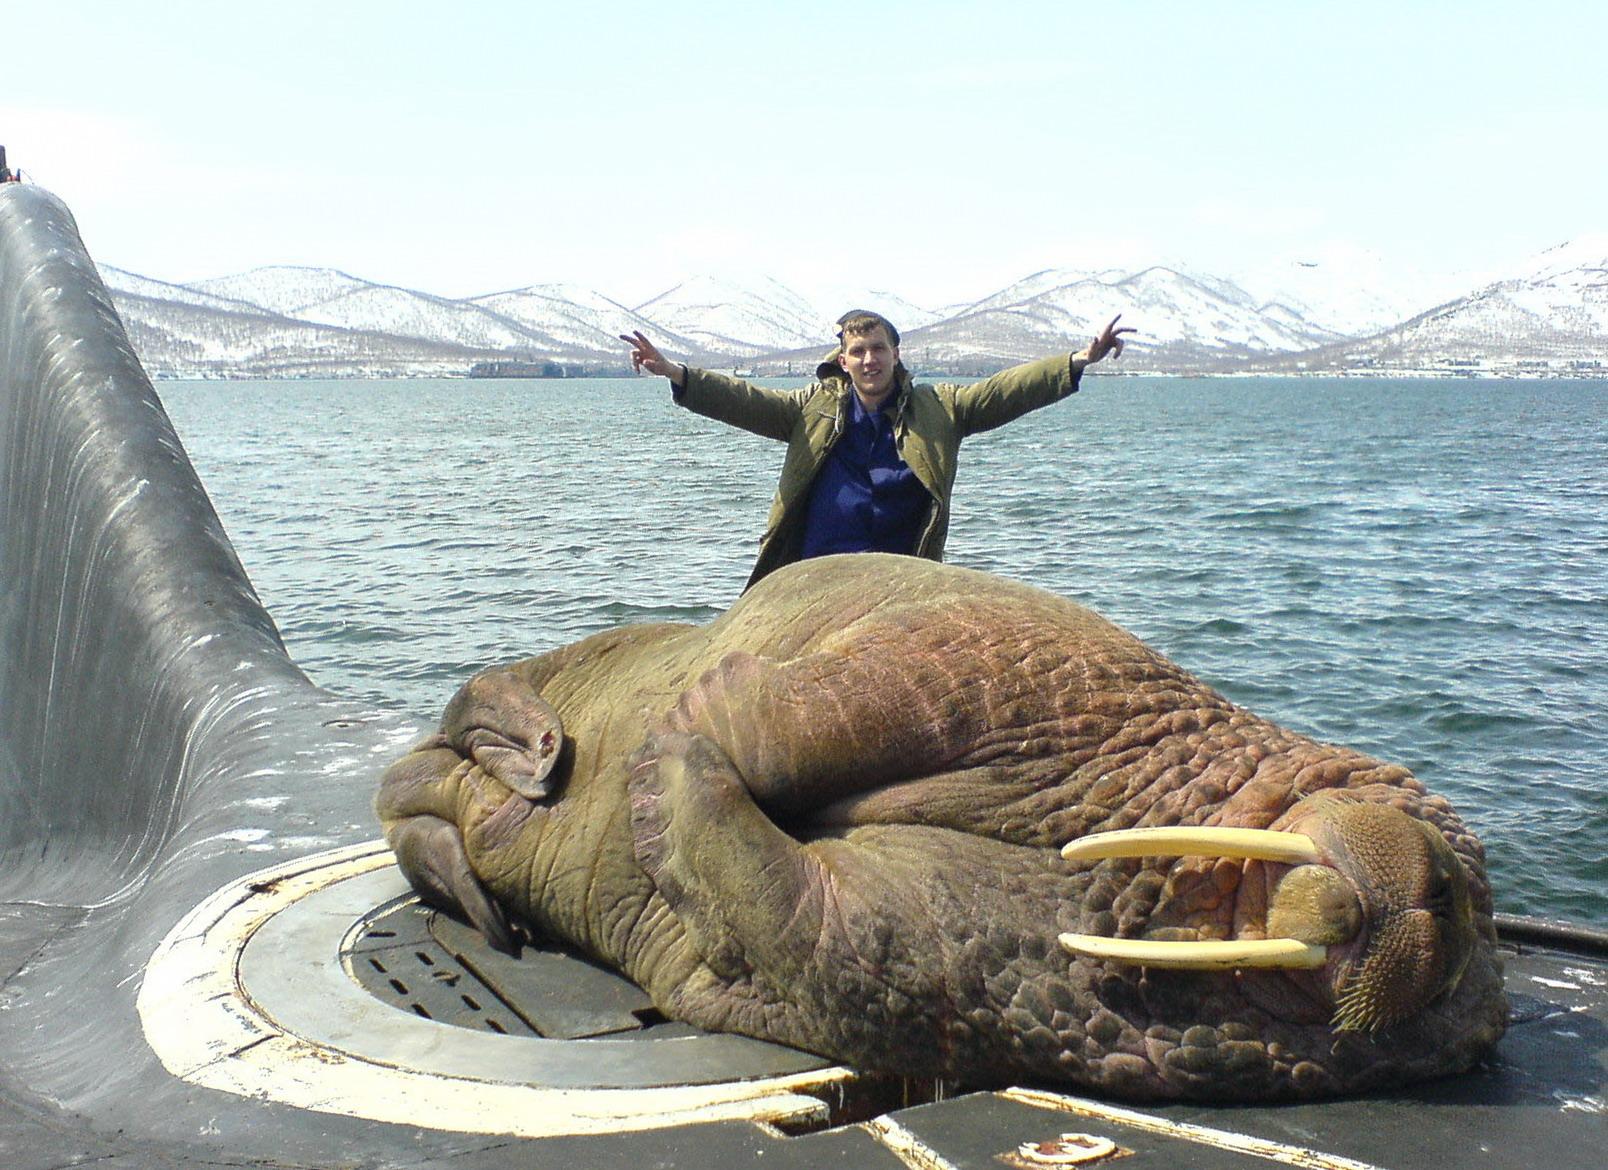 Walrus lori igun-oju-ija kan